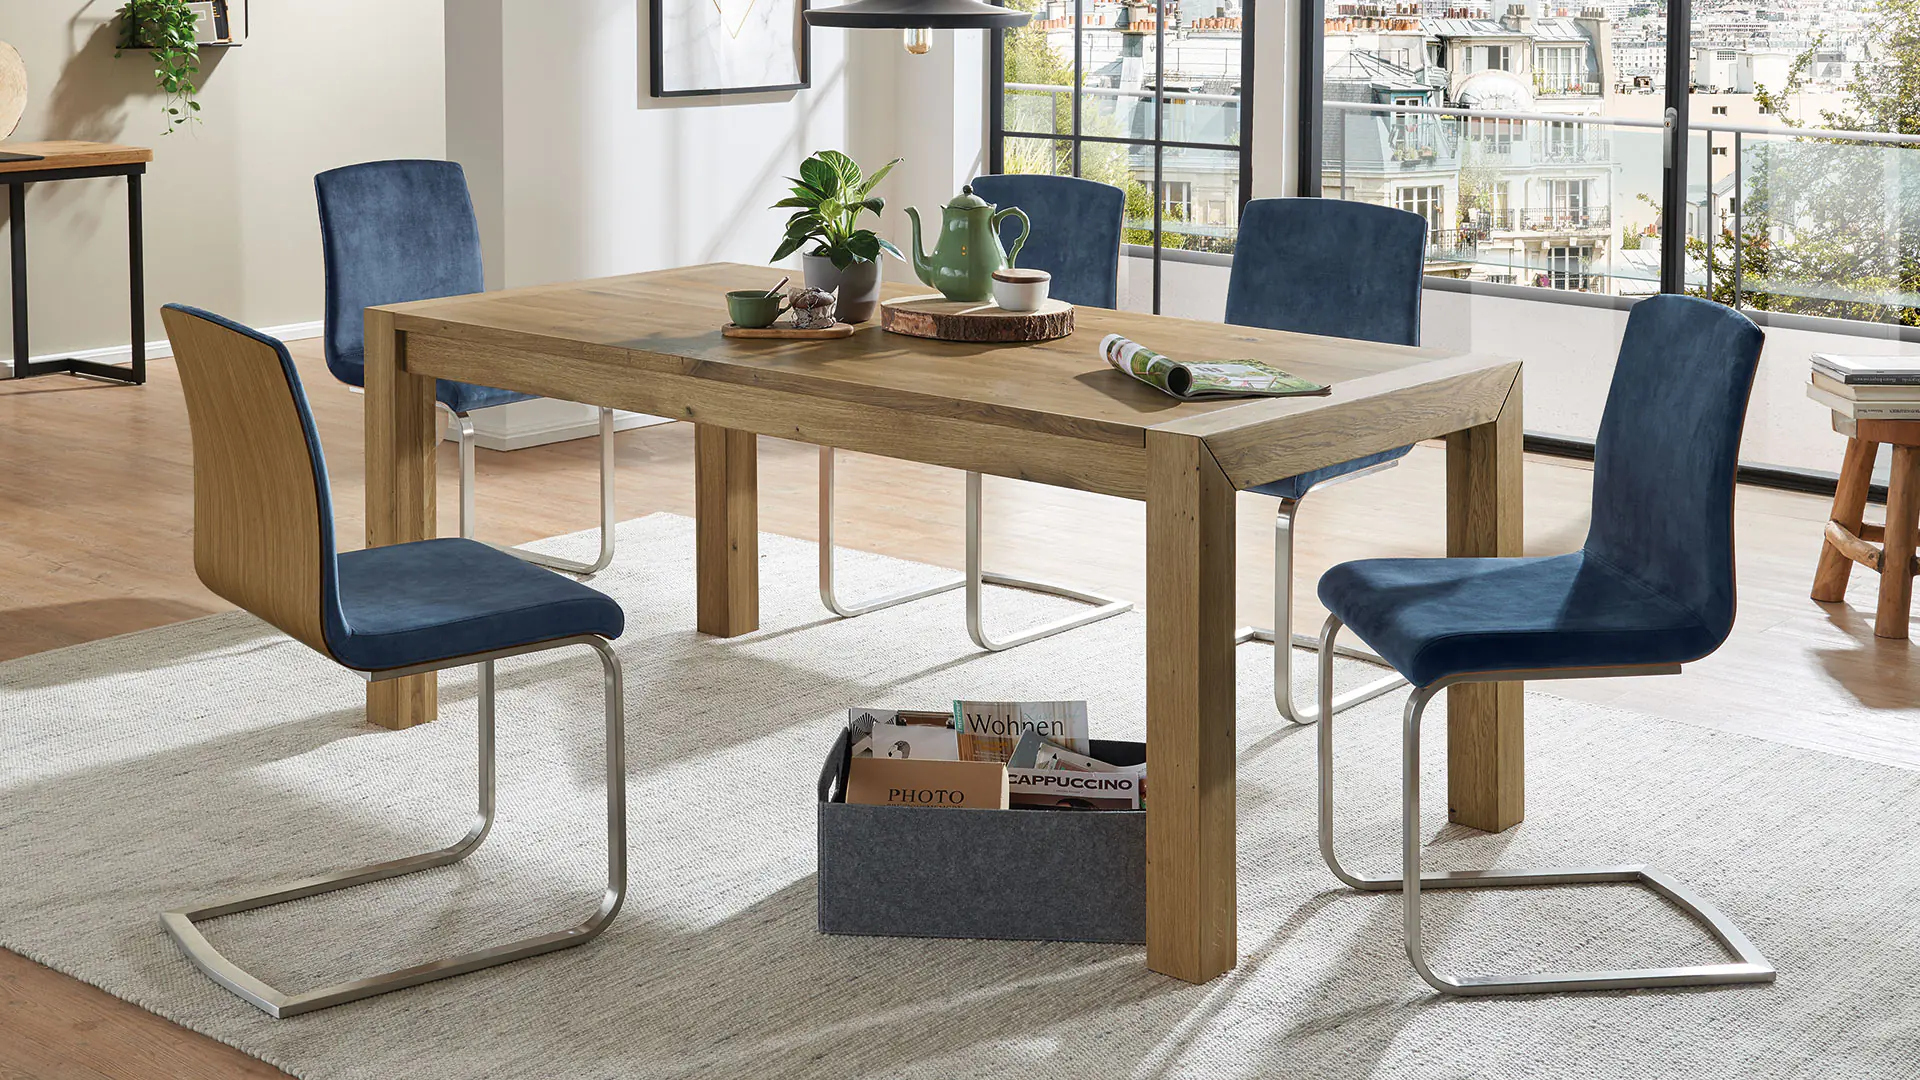 In seinem eleganten, modernen Design passt unser Stuhl Auricia in jedes Ambiente